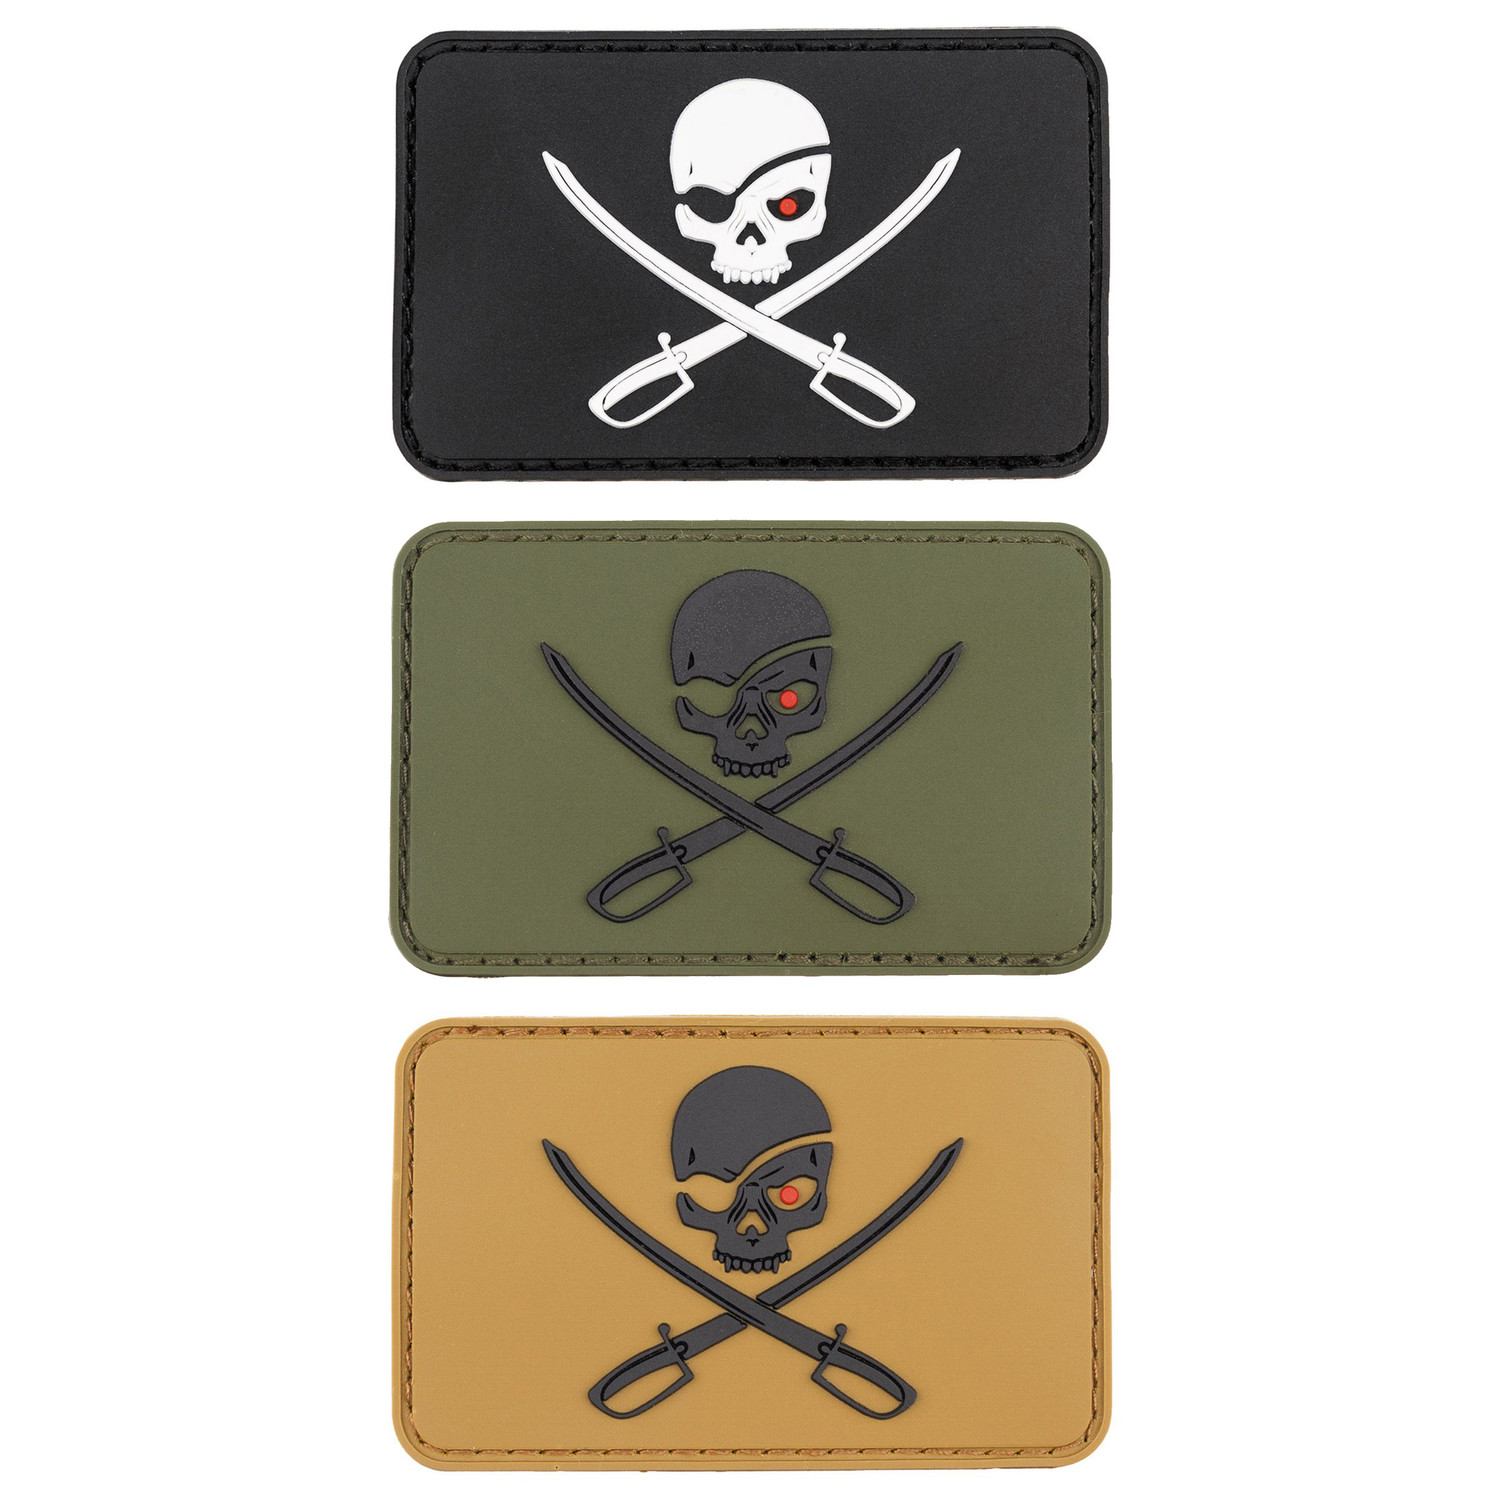 Piraten-Patch mit Totenkopf und Säbeln, 8 x 5 cm Klettabzeichen